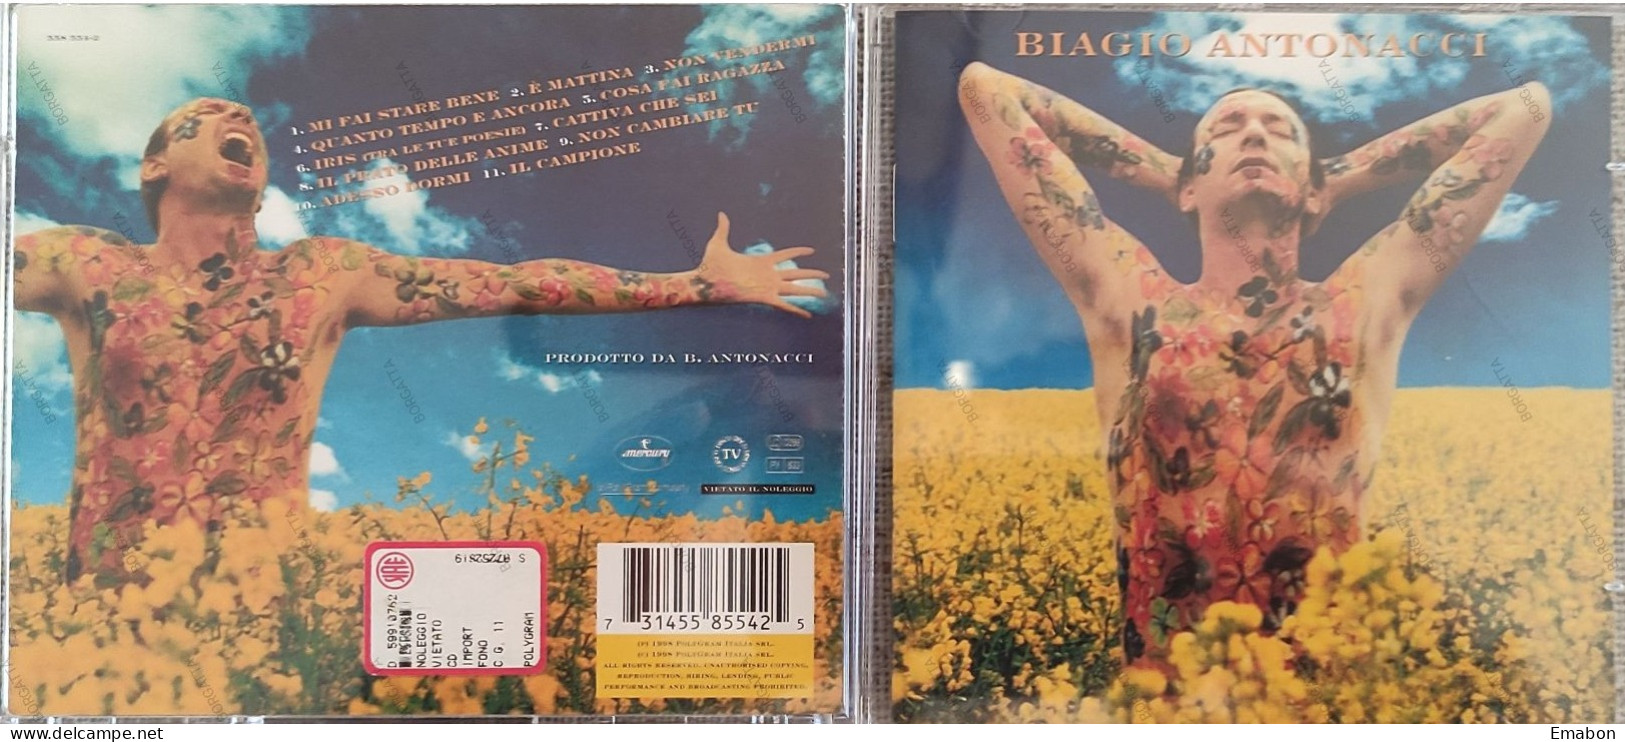 BORGATTA - ITALIANA - Cd  BIAGIO ANTONACCI - MI FAI STARE BENE  - POLYGRAM 1998 -  USATO In Buono Stato - Altri - Musica Italiana